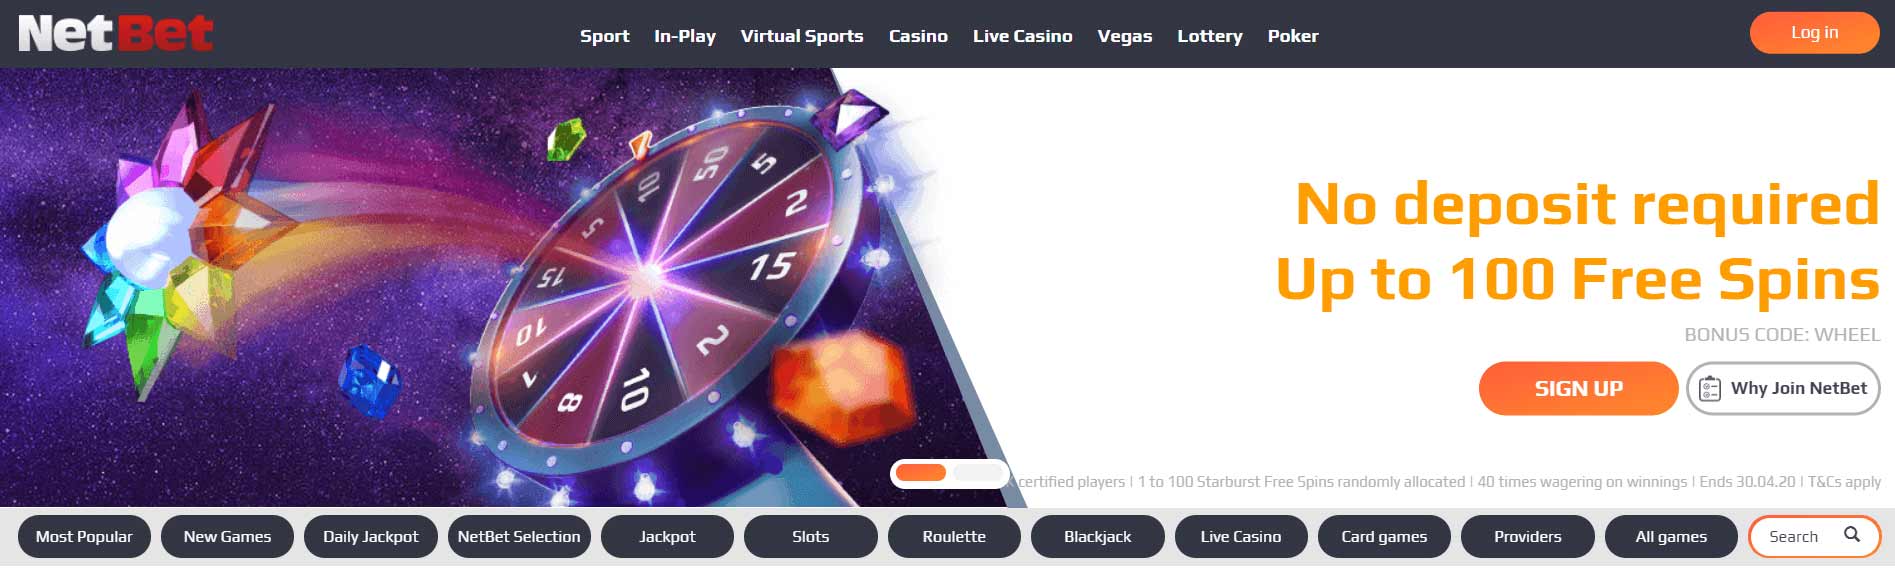 Top 20 uk casinos